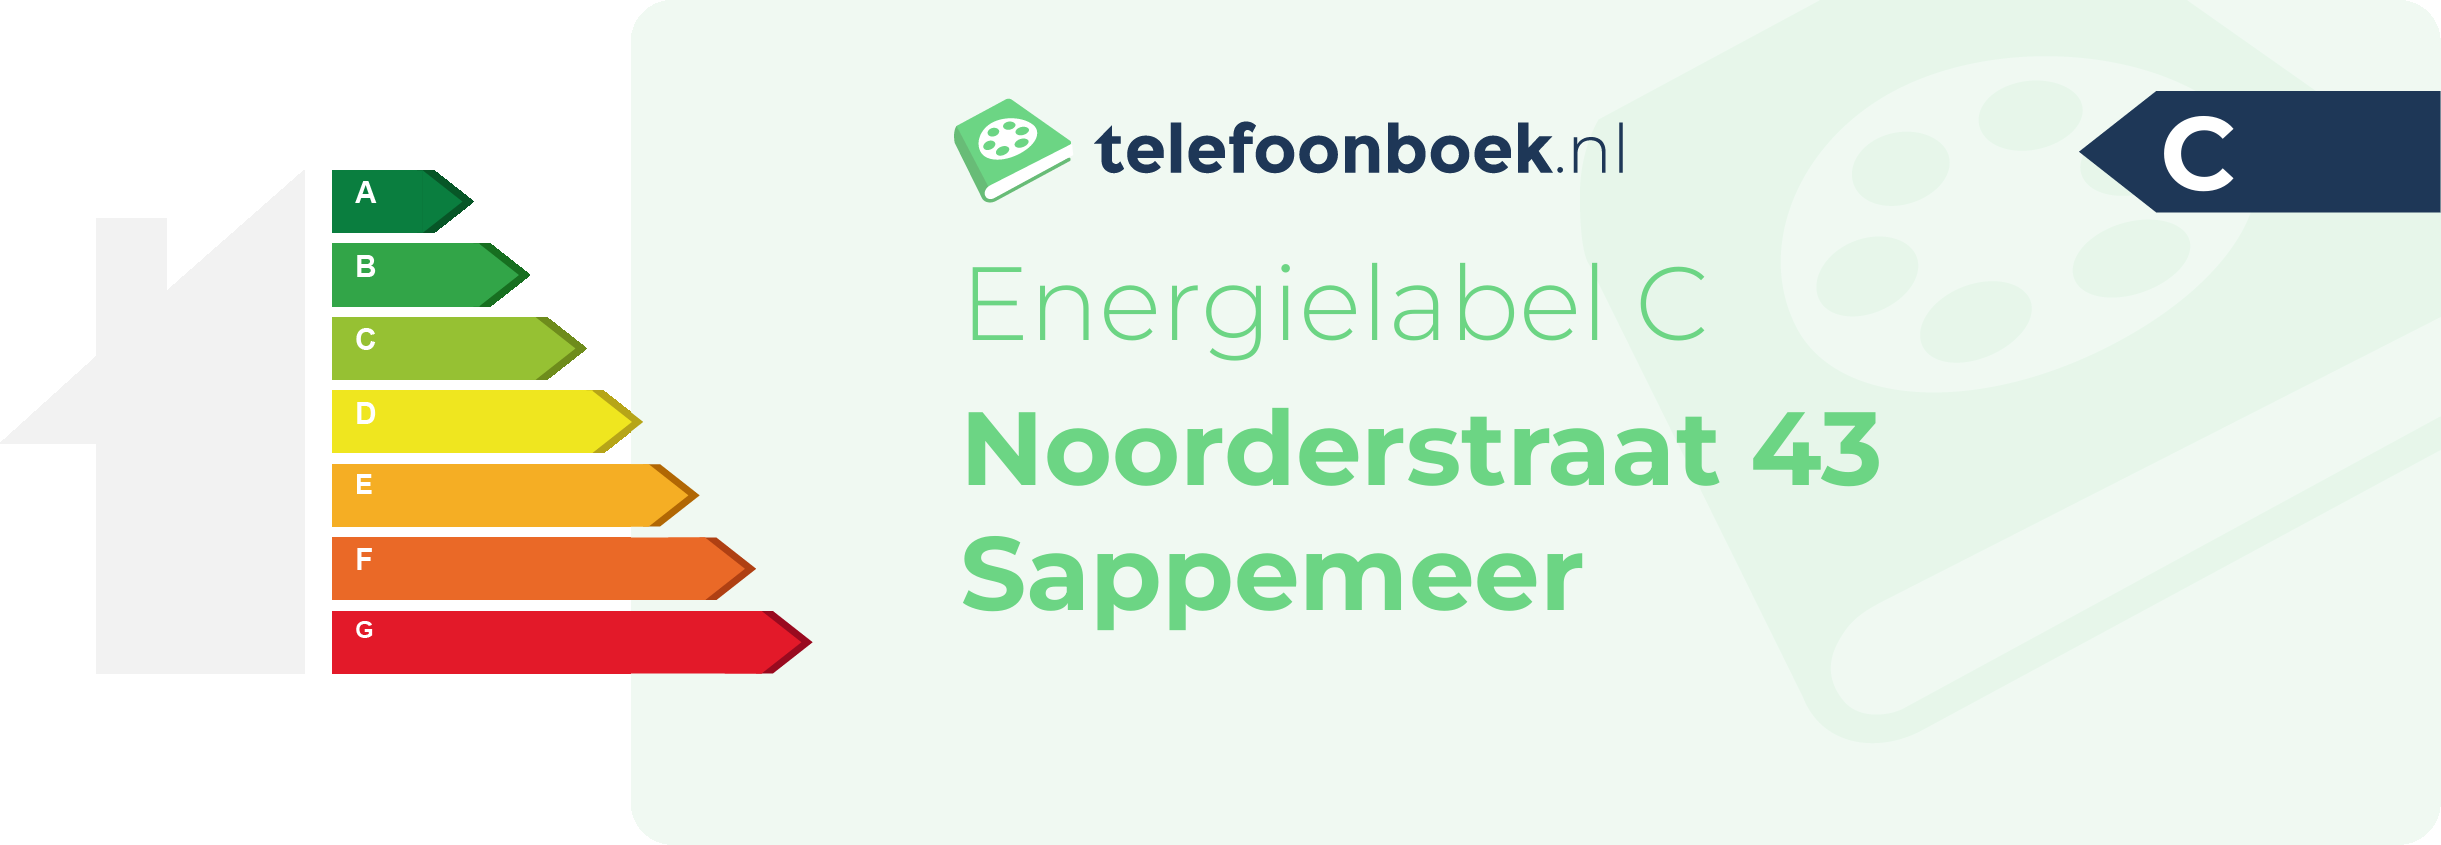 Energielabel Noorderstraat 43 Sappemeer